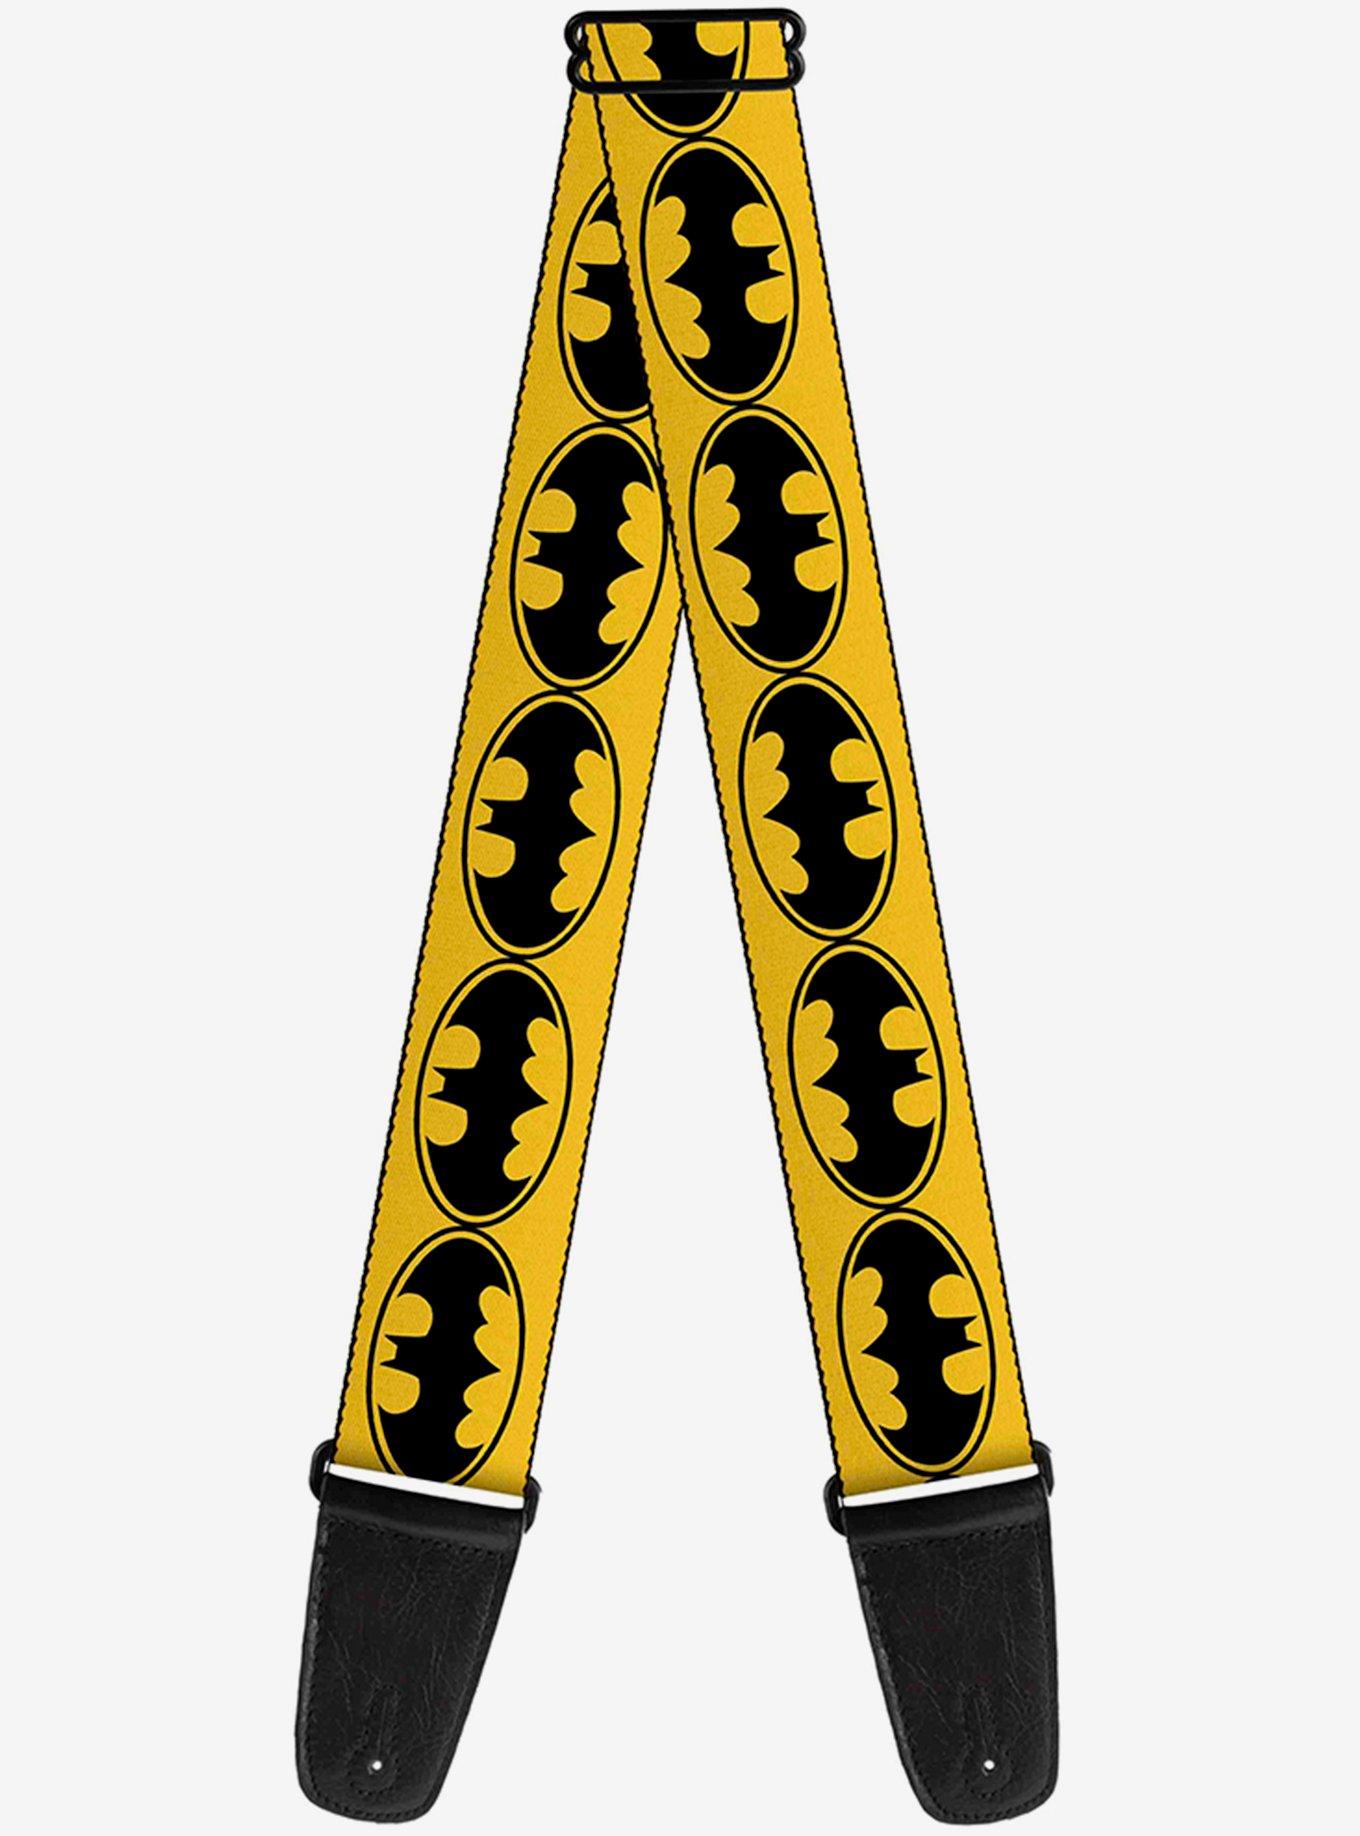 DC Comics Batman Bat Signals Yellow Black Guitar Strap, , hi-res